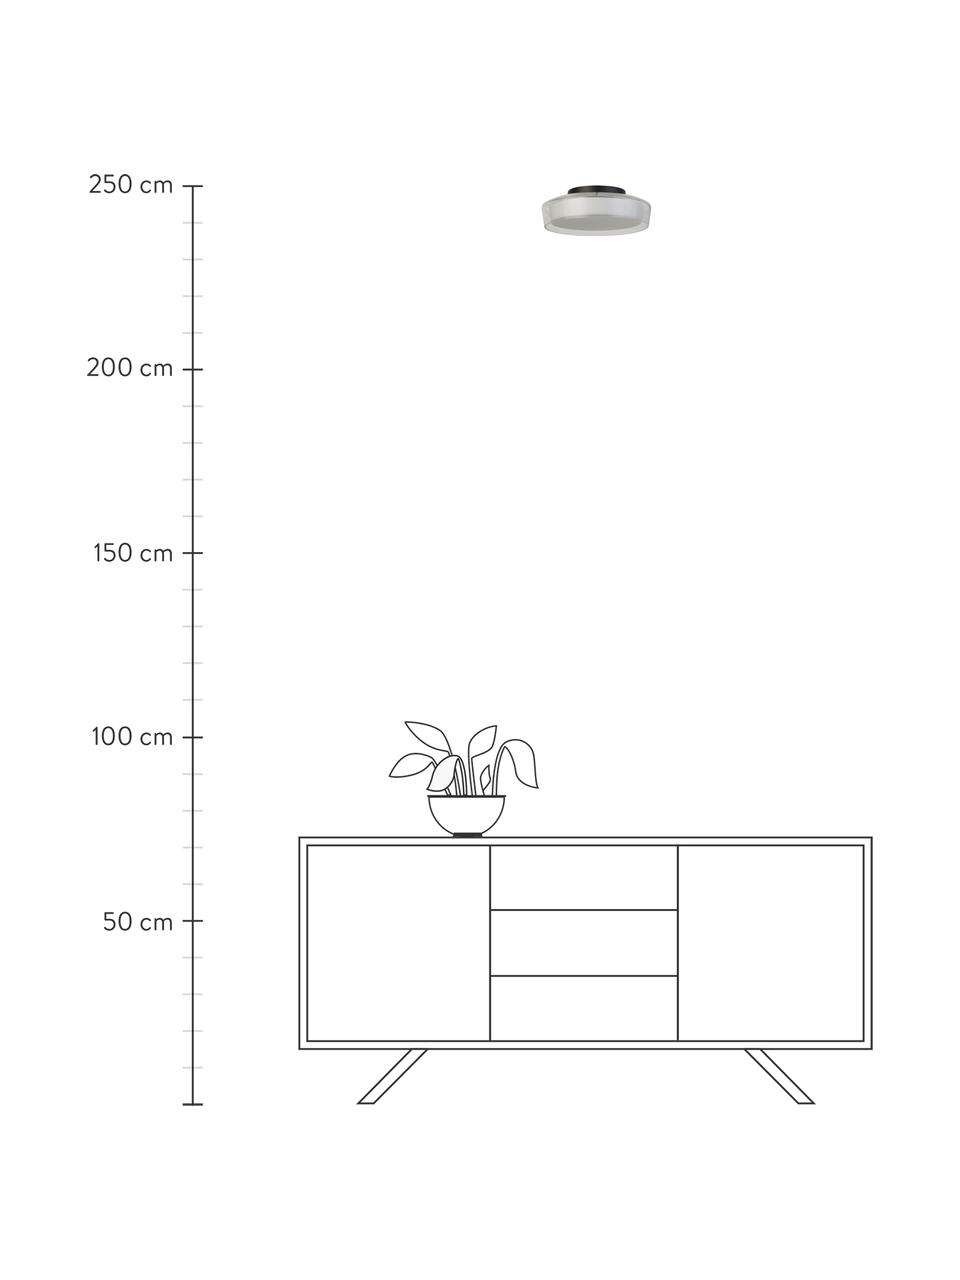 Plafonnier LED avec variateur d'intensité Matt, Blanc, transparent, Ø 30 x haut. 10 cm